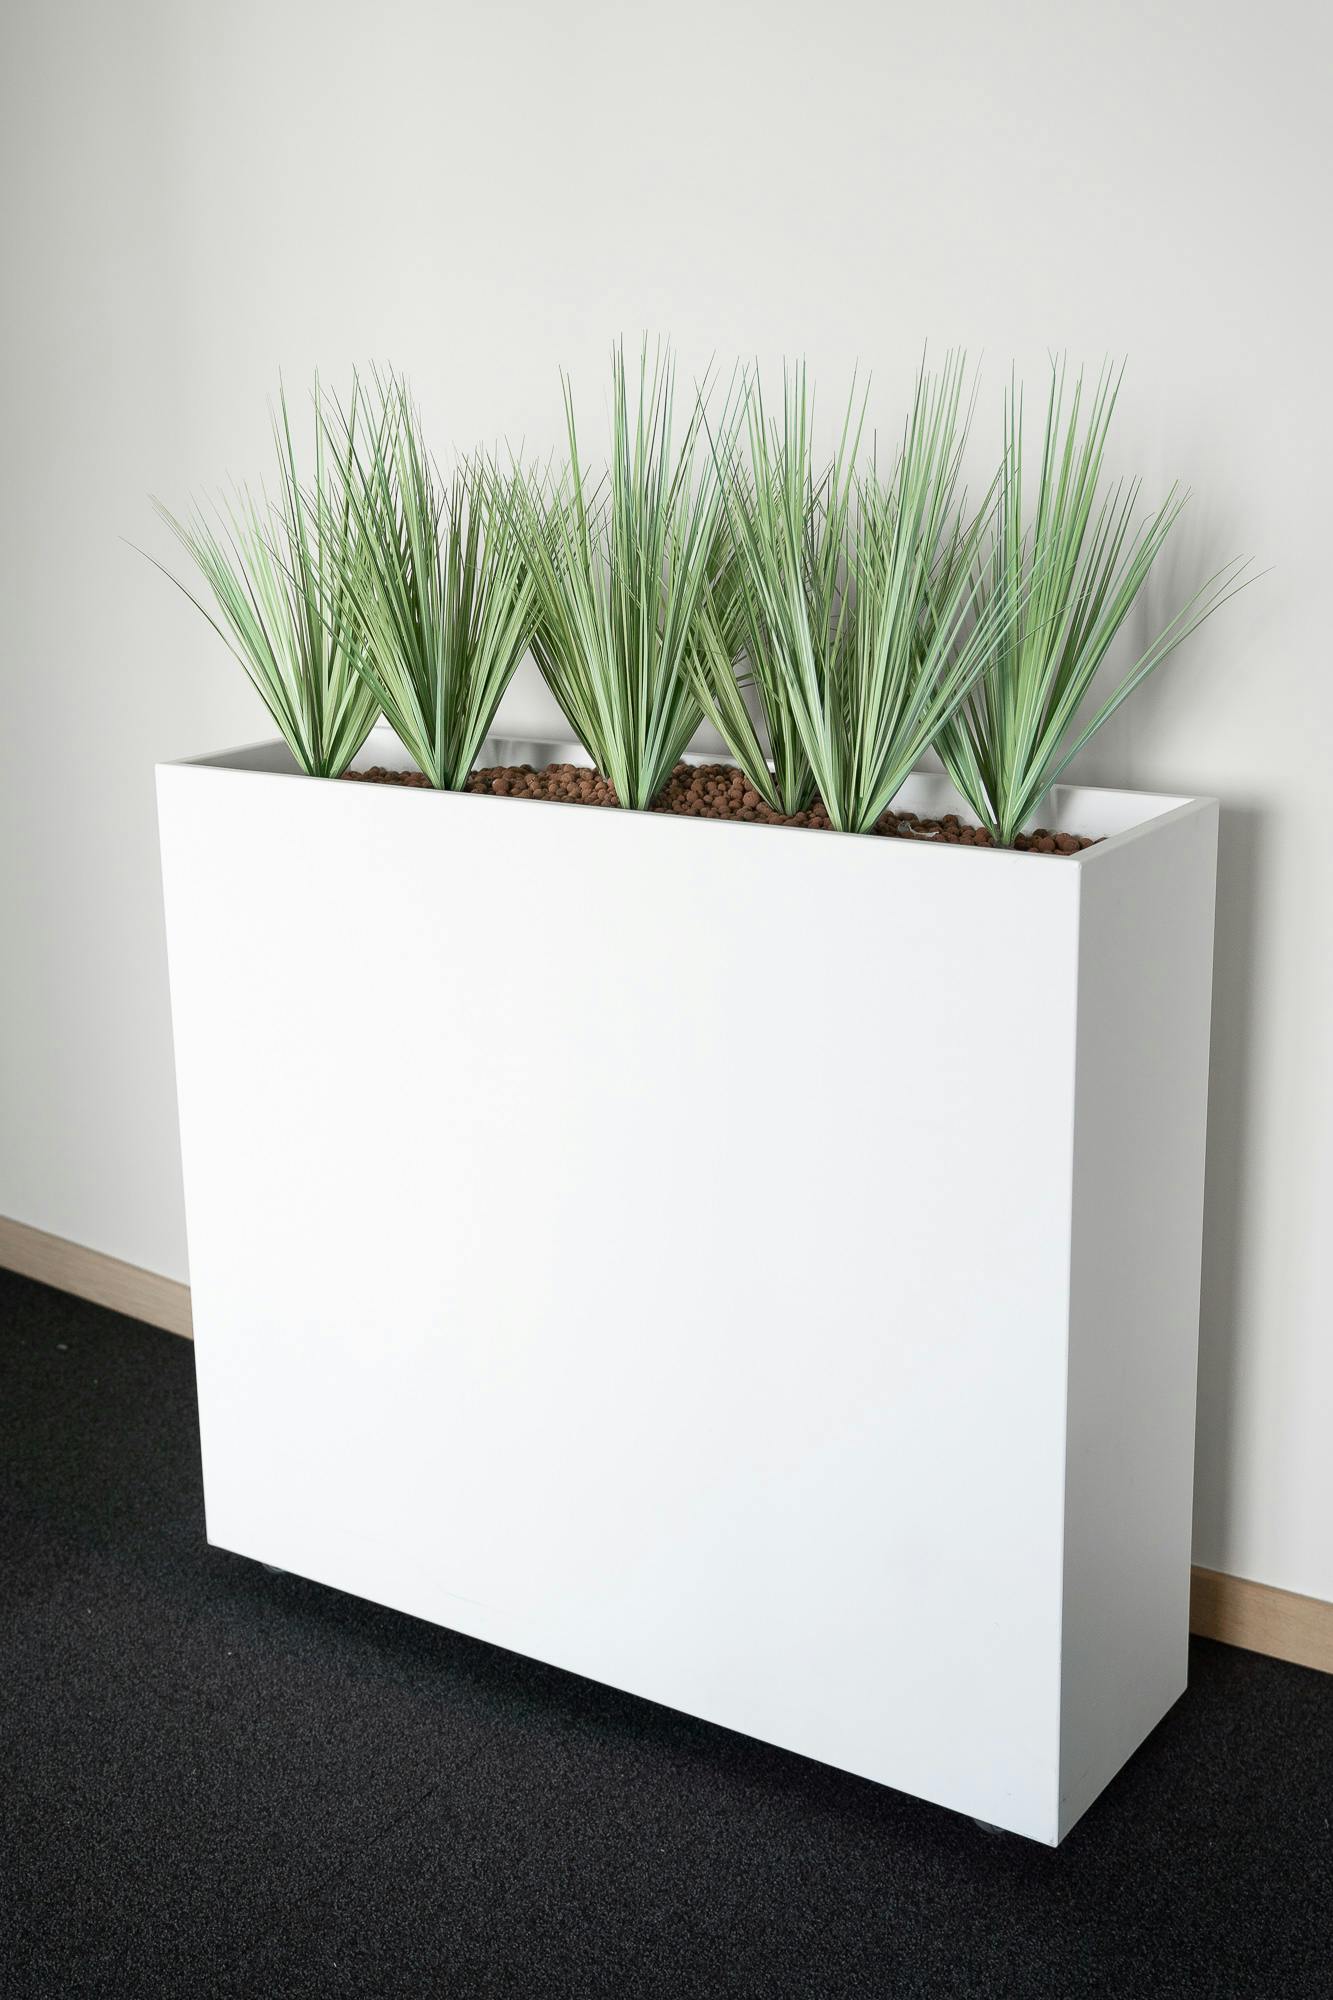 Grote plantenbak - foto - Tweedehands kwaliteit "Diverse" - Relieve Furniture